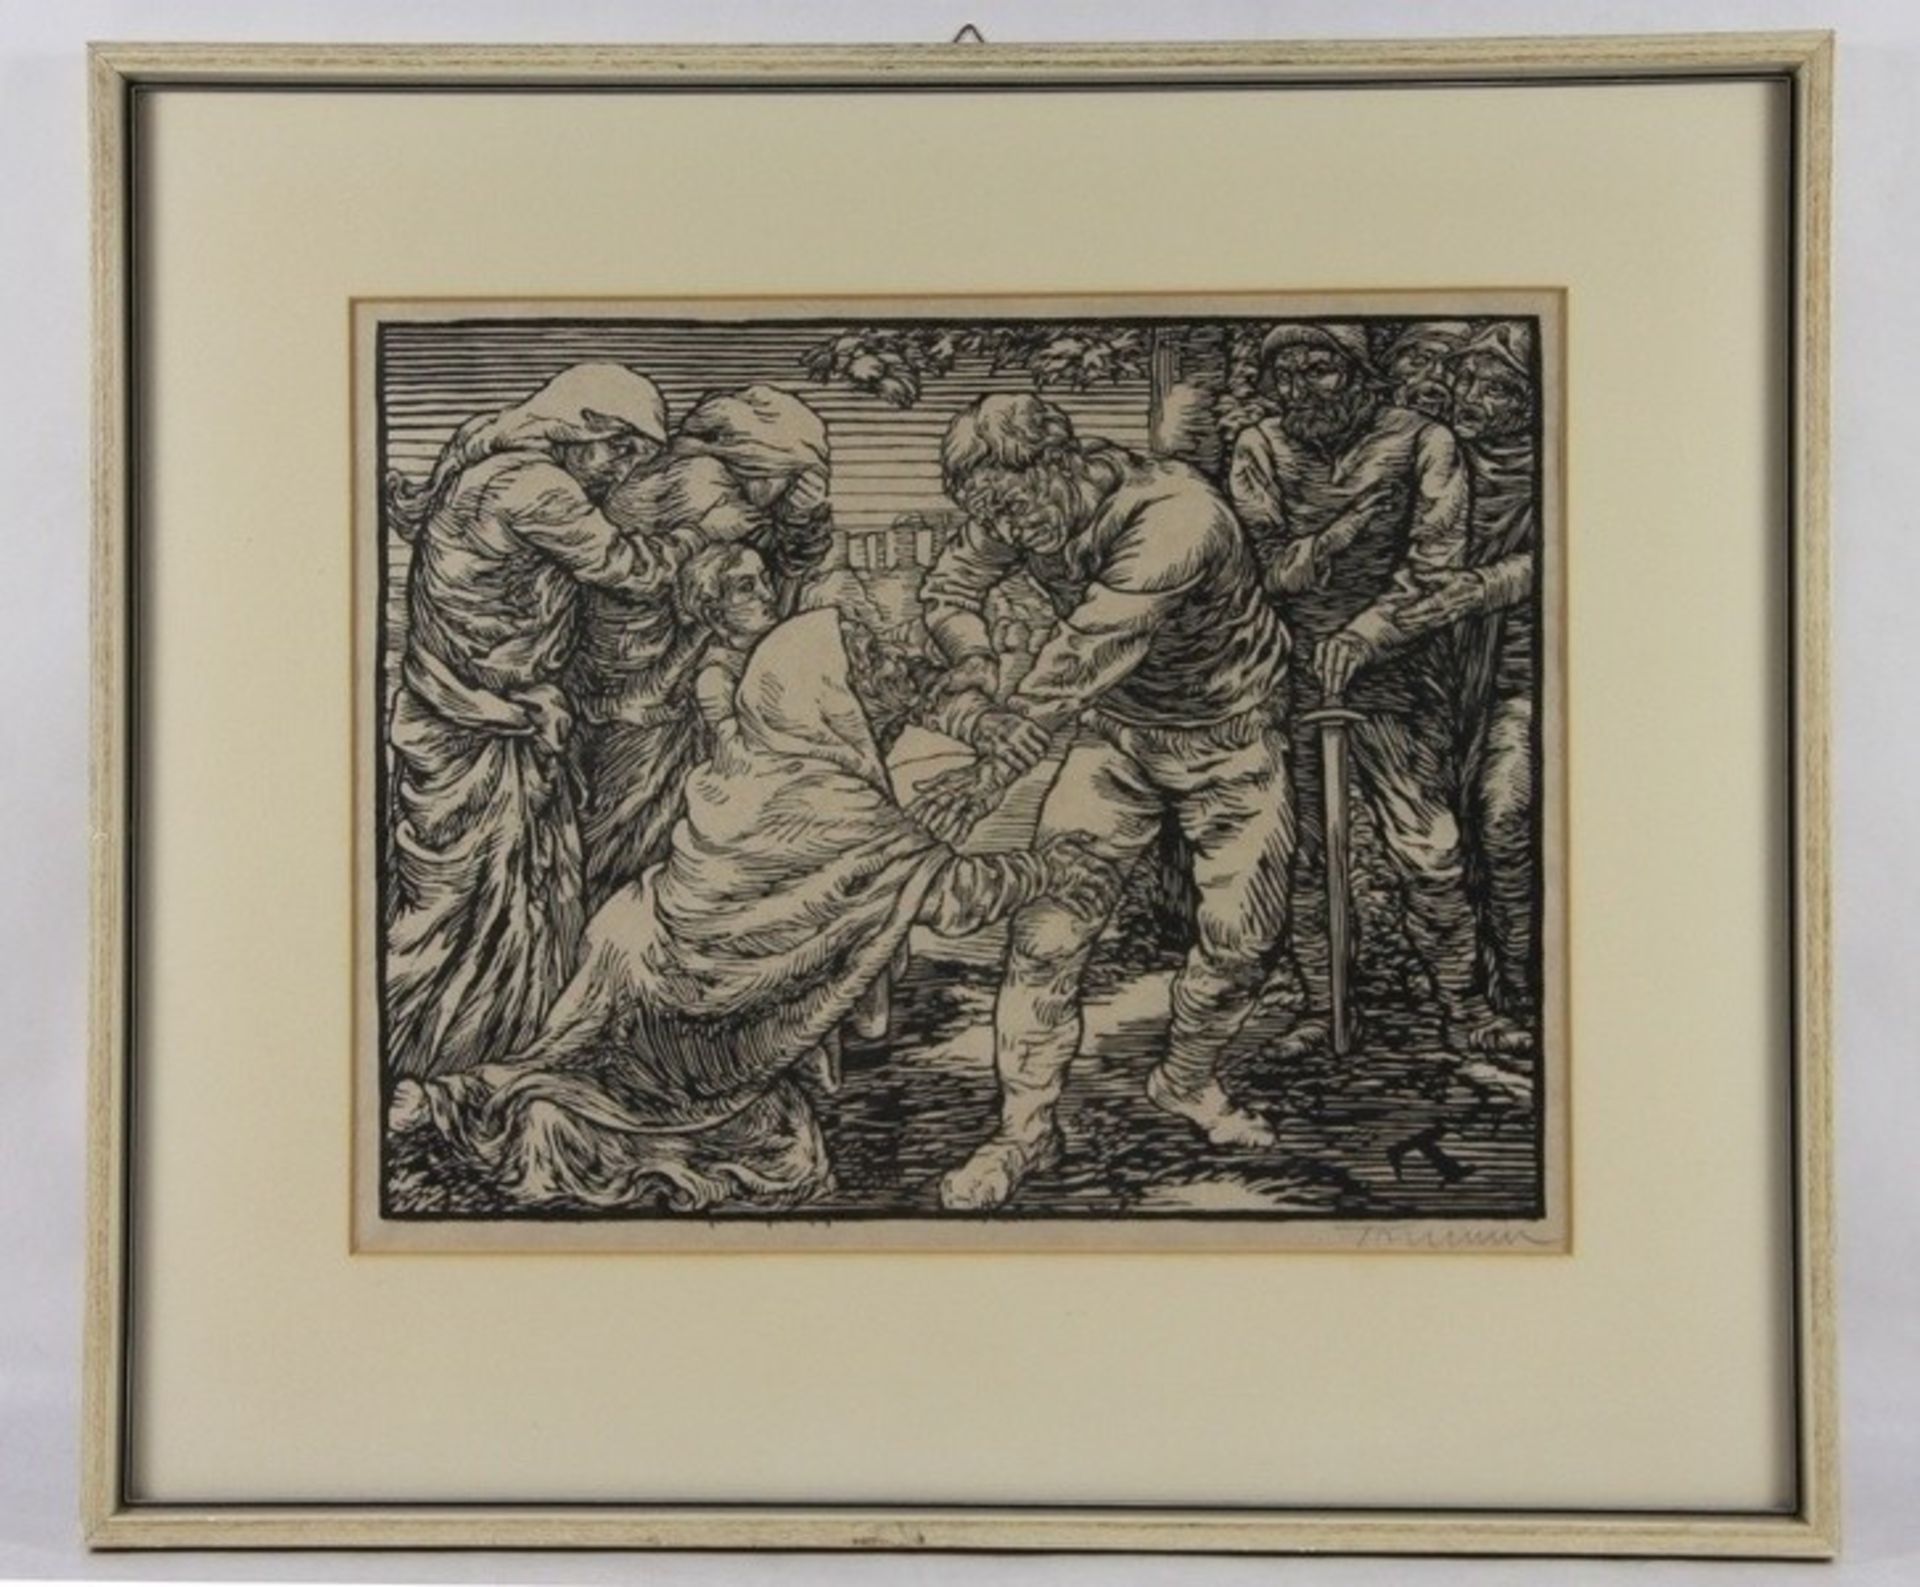 Trumm, Peter1888-1966, Holzschnitt, Coriolanus und seine Mutter, flankiert von weiteren Männ